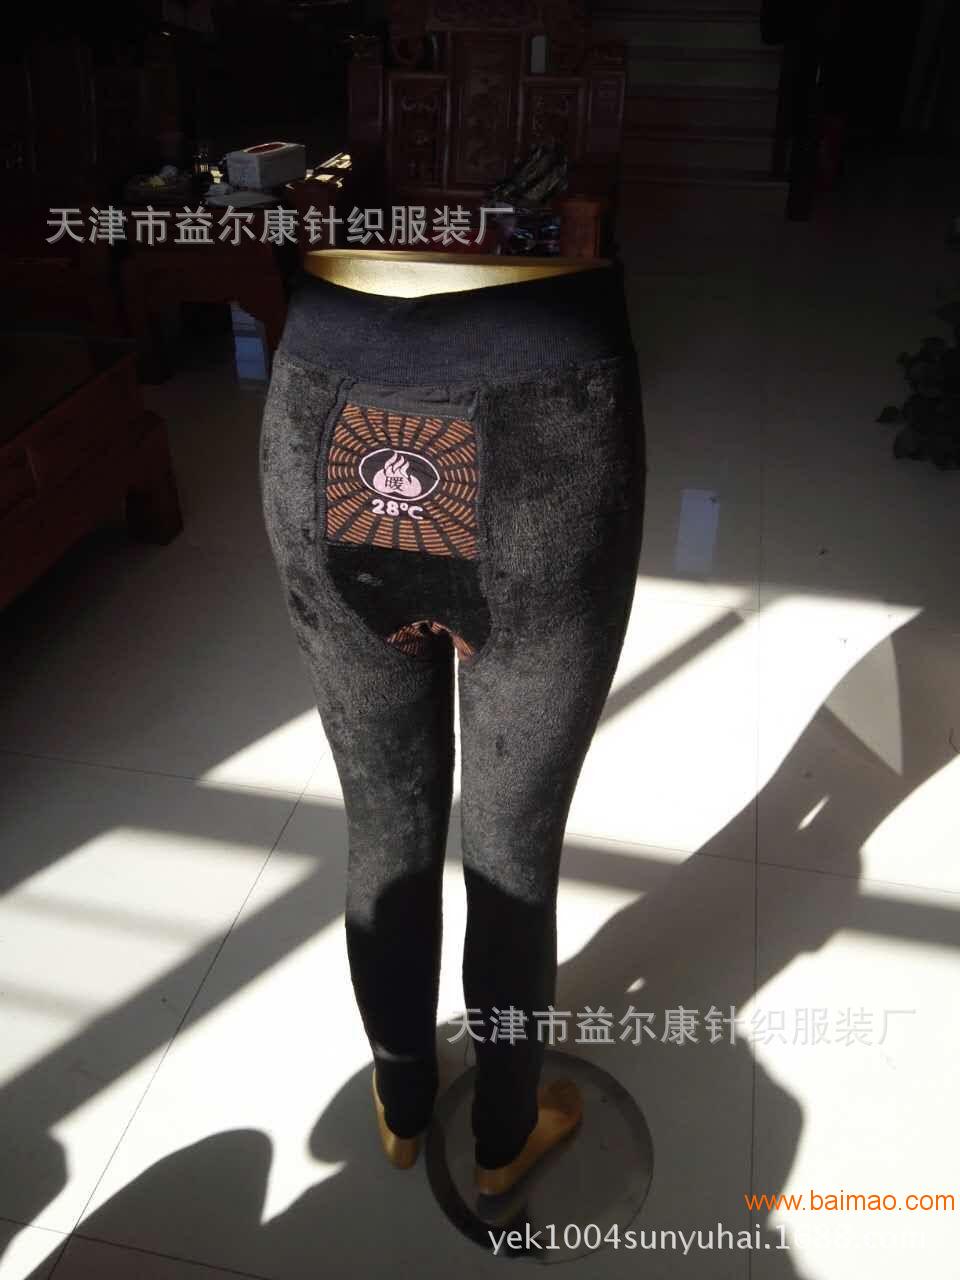 天津益尔康电视同款28度热能裤